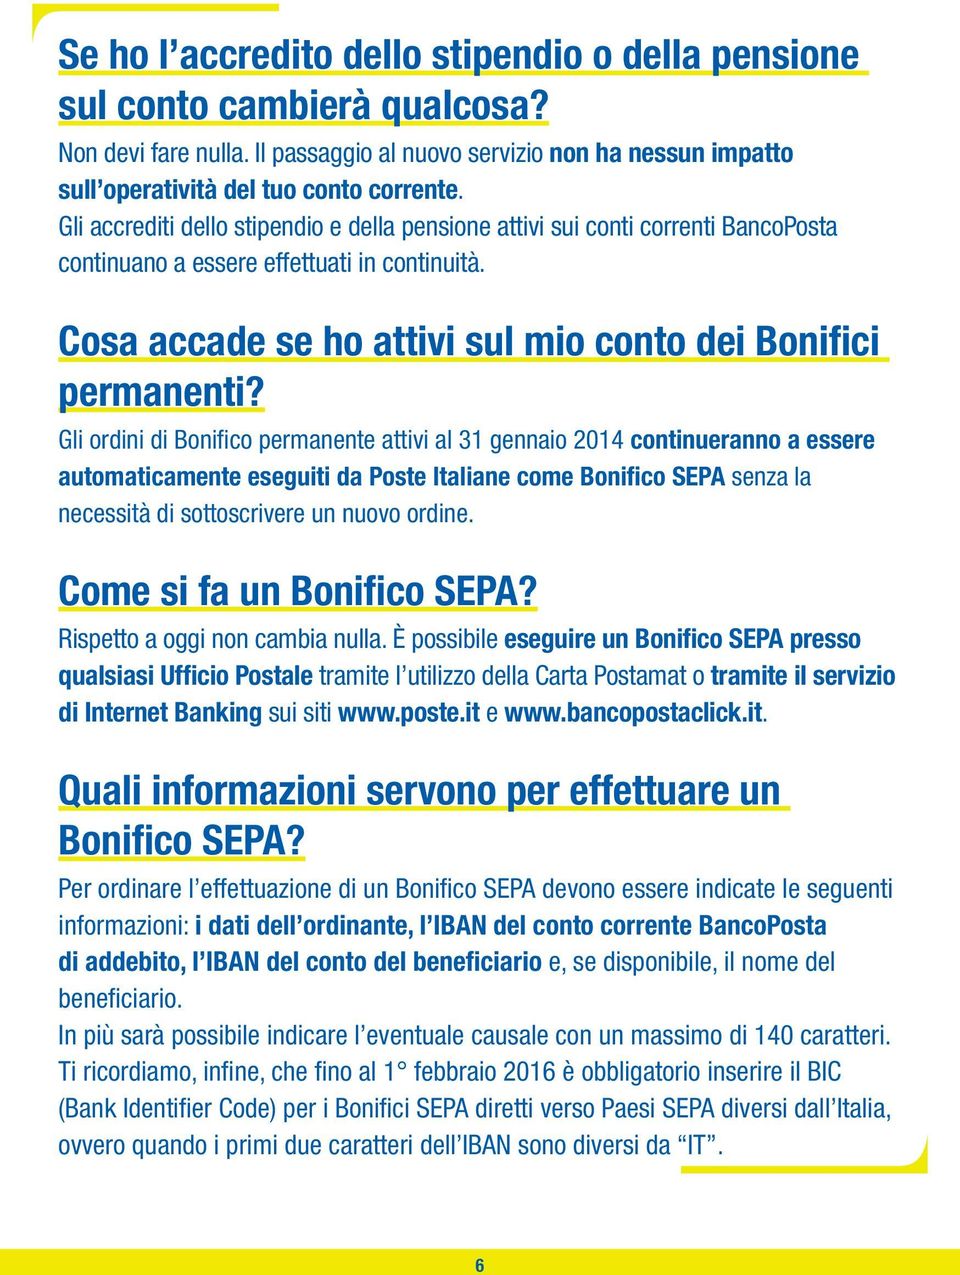 Gli ordini di Bonifico permanente attivi al 31 gennaio 2014 continueranno a essere automaticamente eseguiti da Poste Italiane come Bonifico SEPA senza la necessità di sottoscrivere un nuovo ordine.